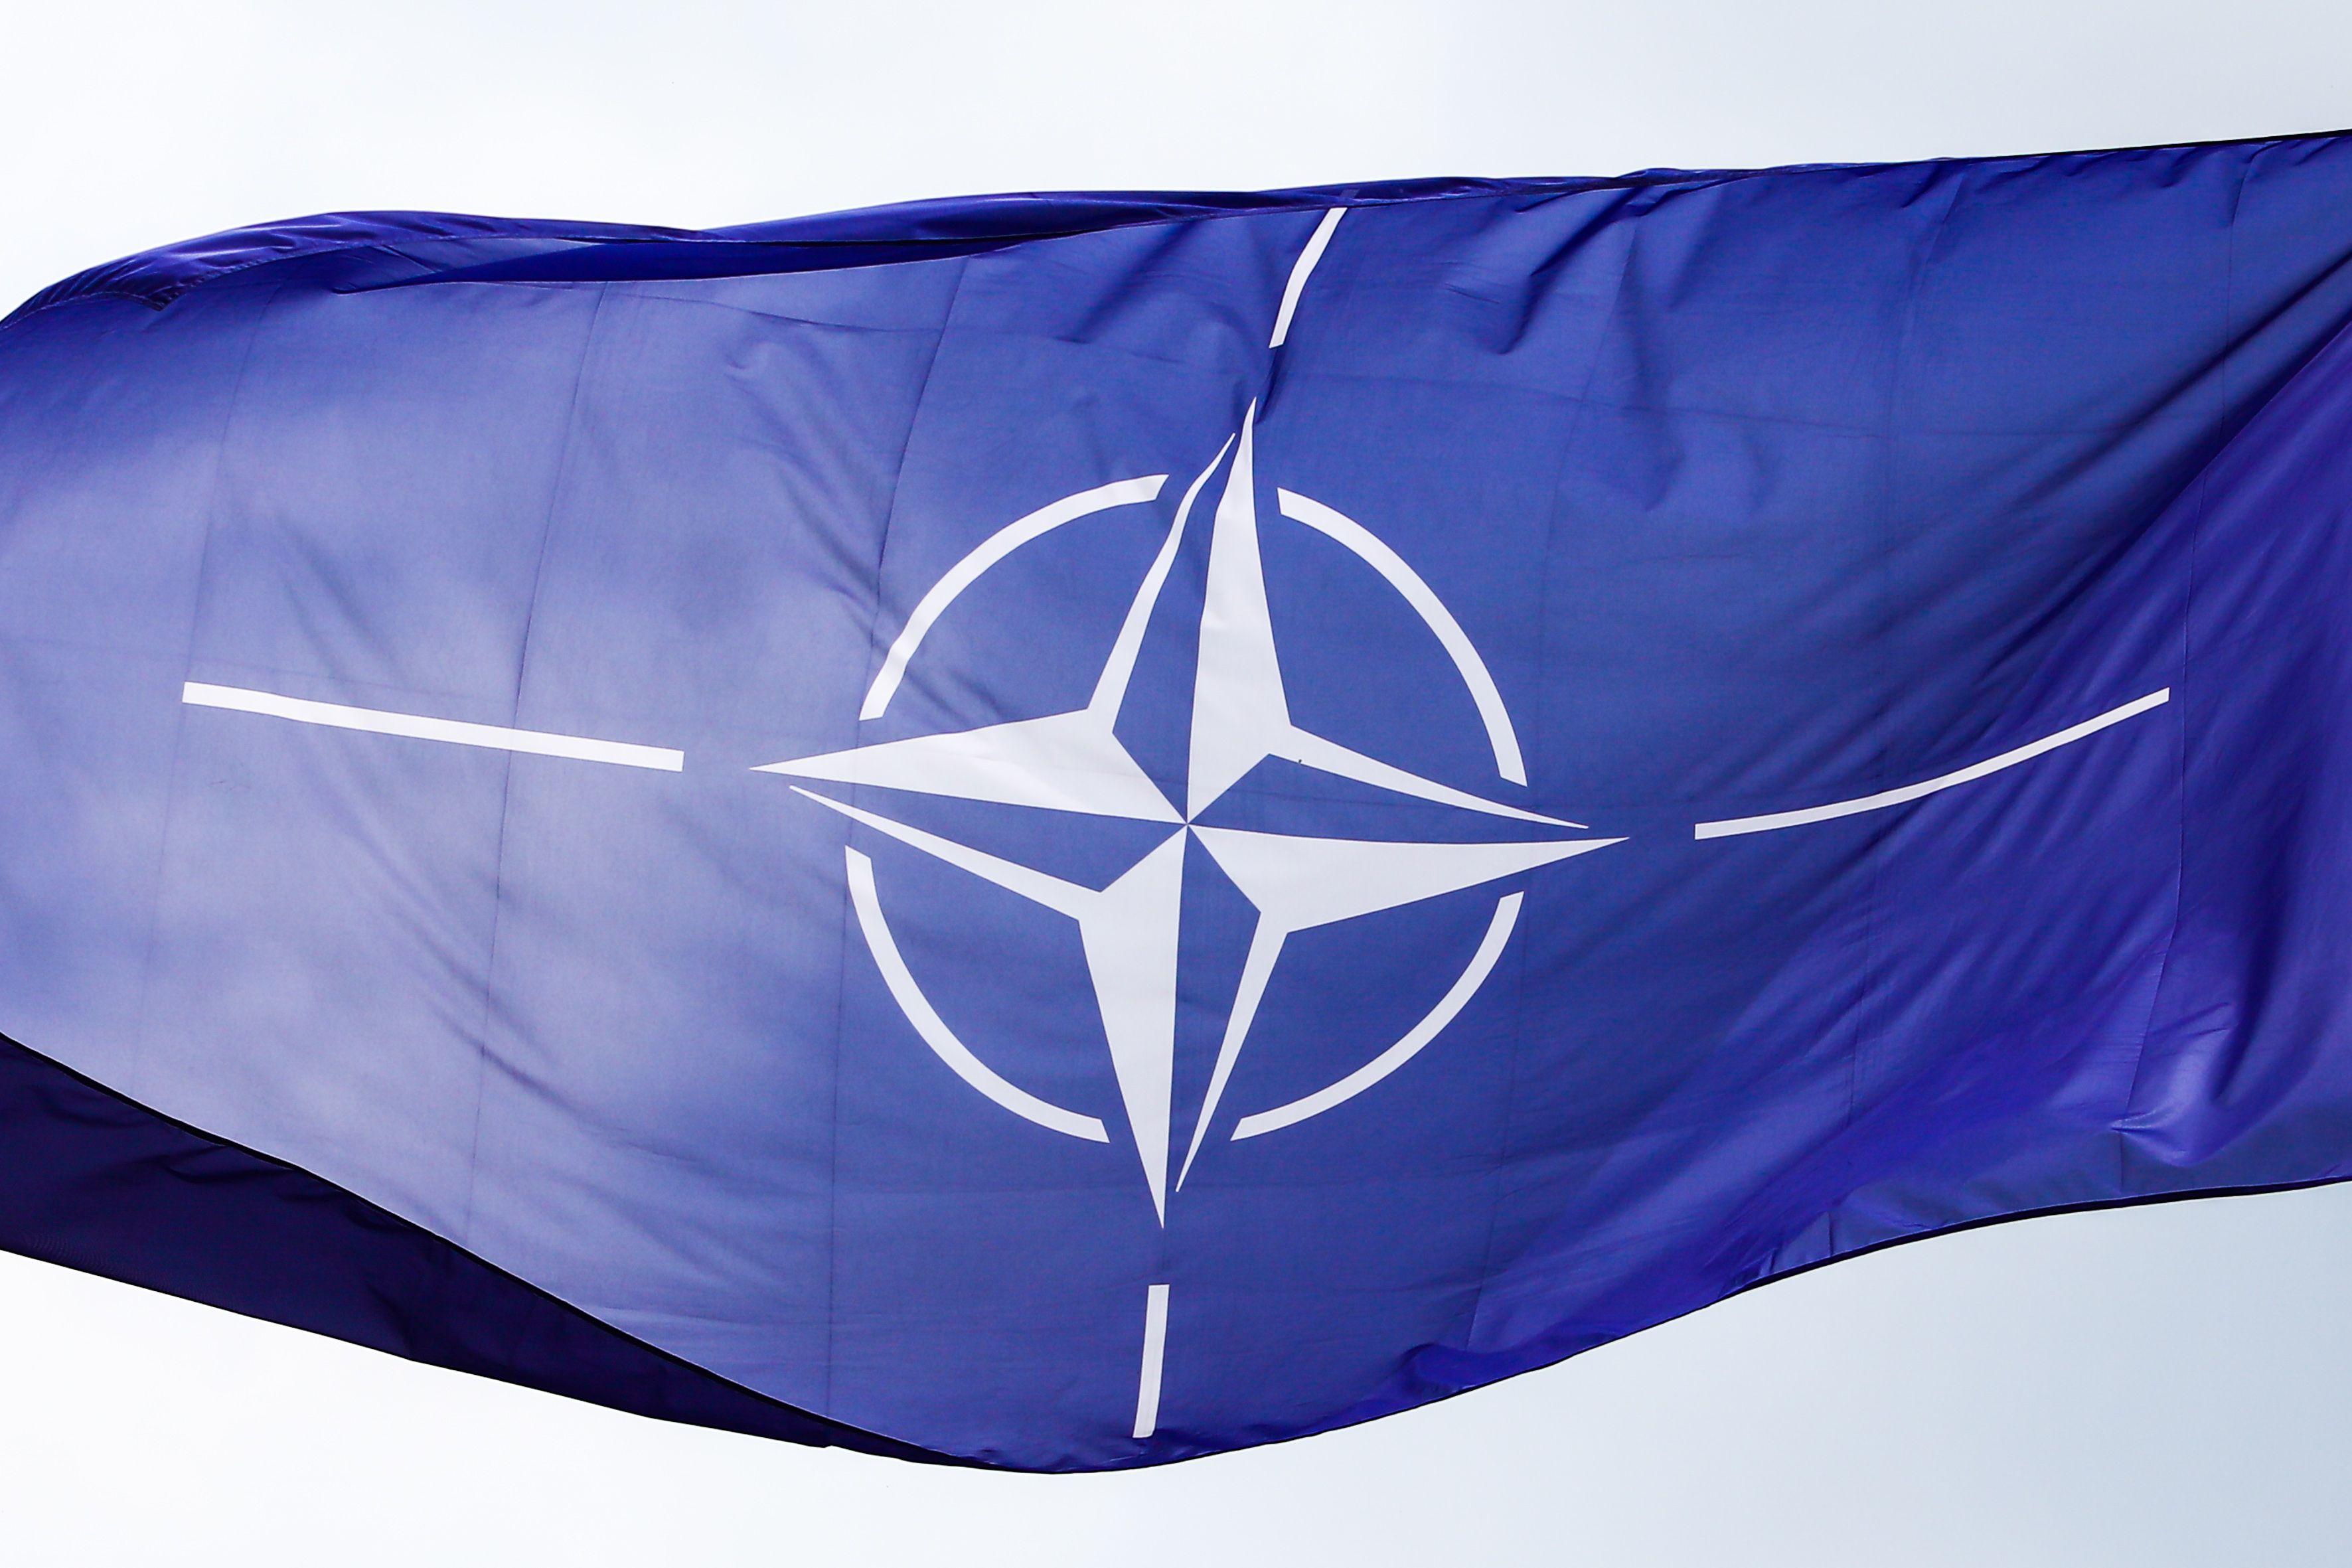 1 “Ми не згодні, що членство України в НАТО спровокує конфлікт з Росією” Науковці просять алья - 24 Канал